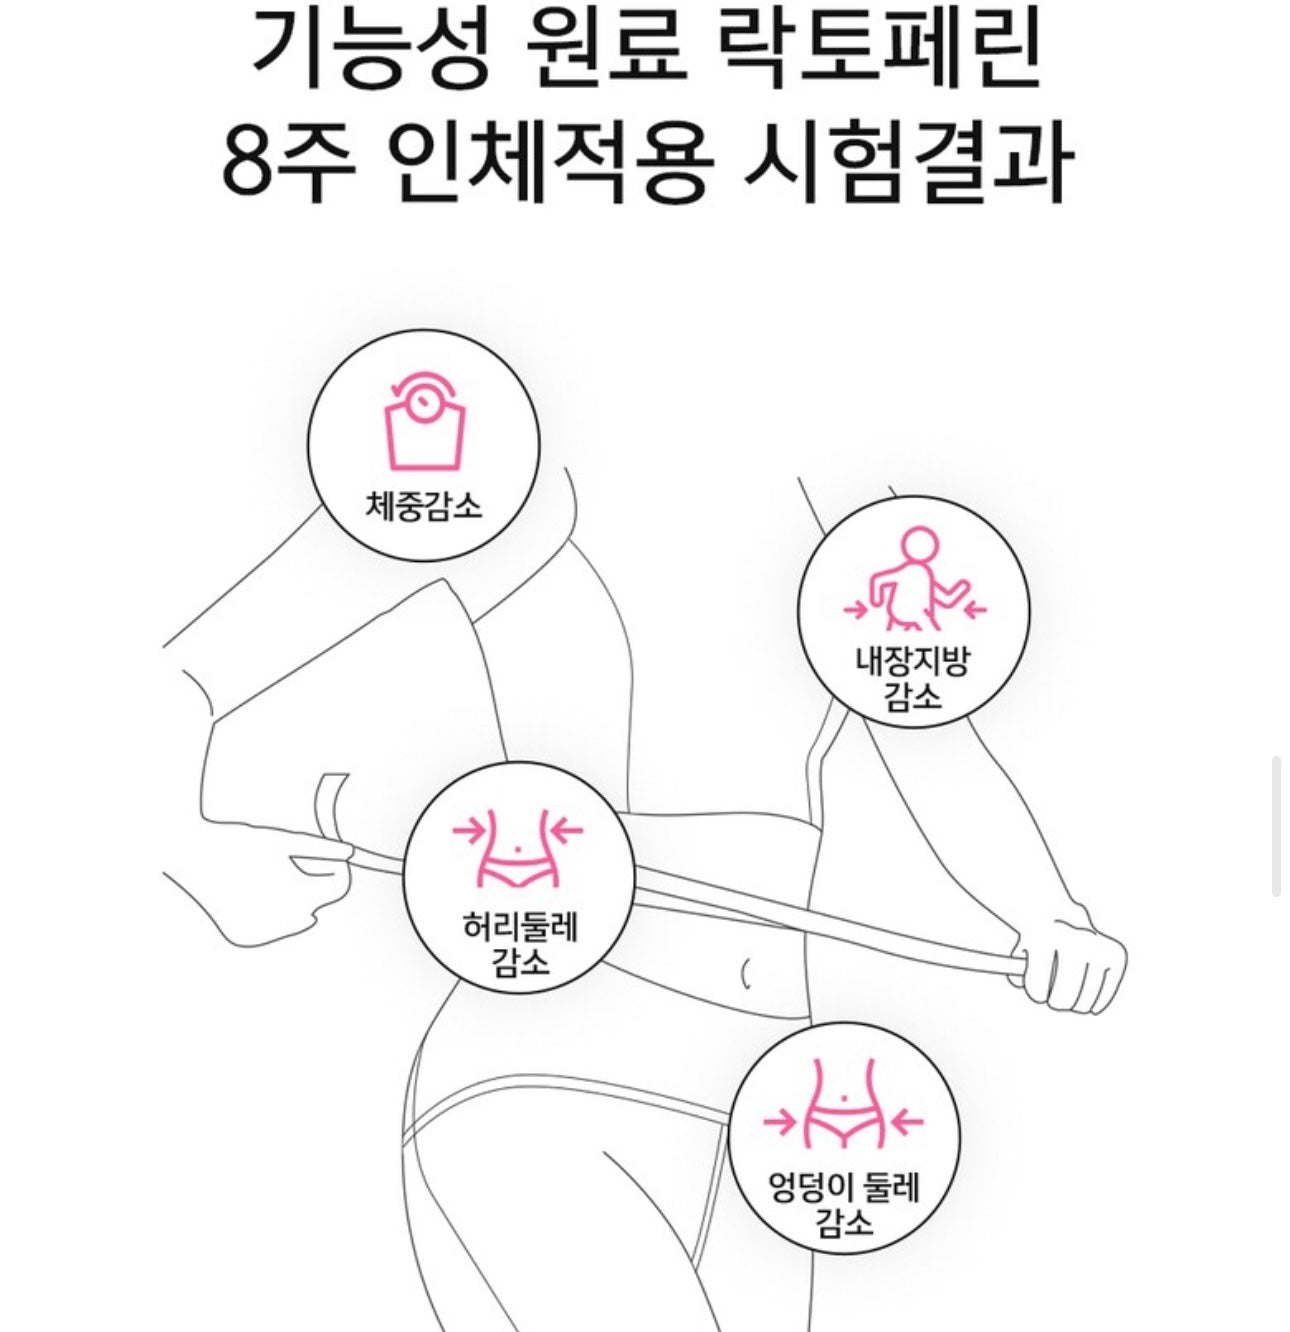 懶人恩物| 減重免疫二合一|多國安全認證🏆 |韓國Healthy Palace PPAEBAR 溶脂美容塑形丸| 韓韶鿋代言🔥